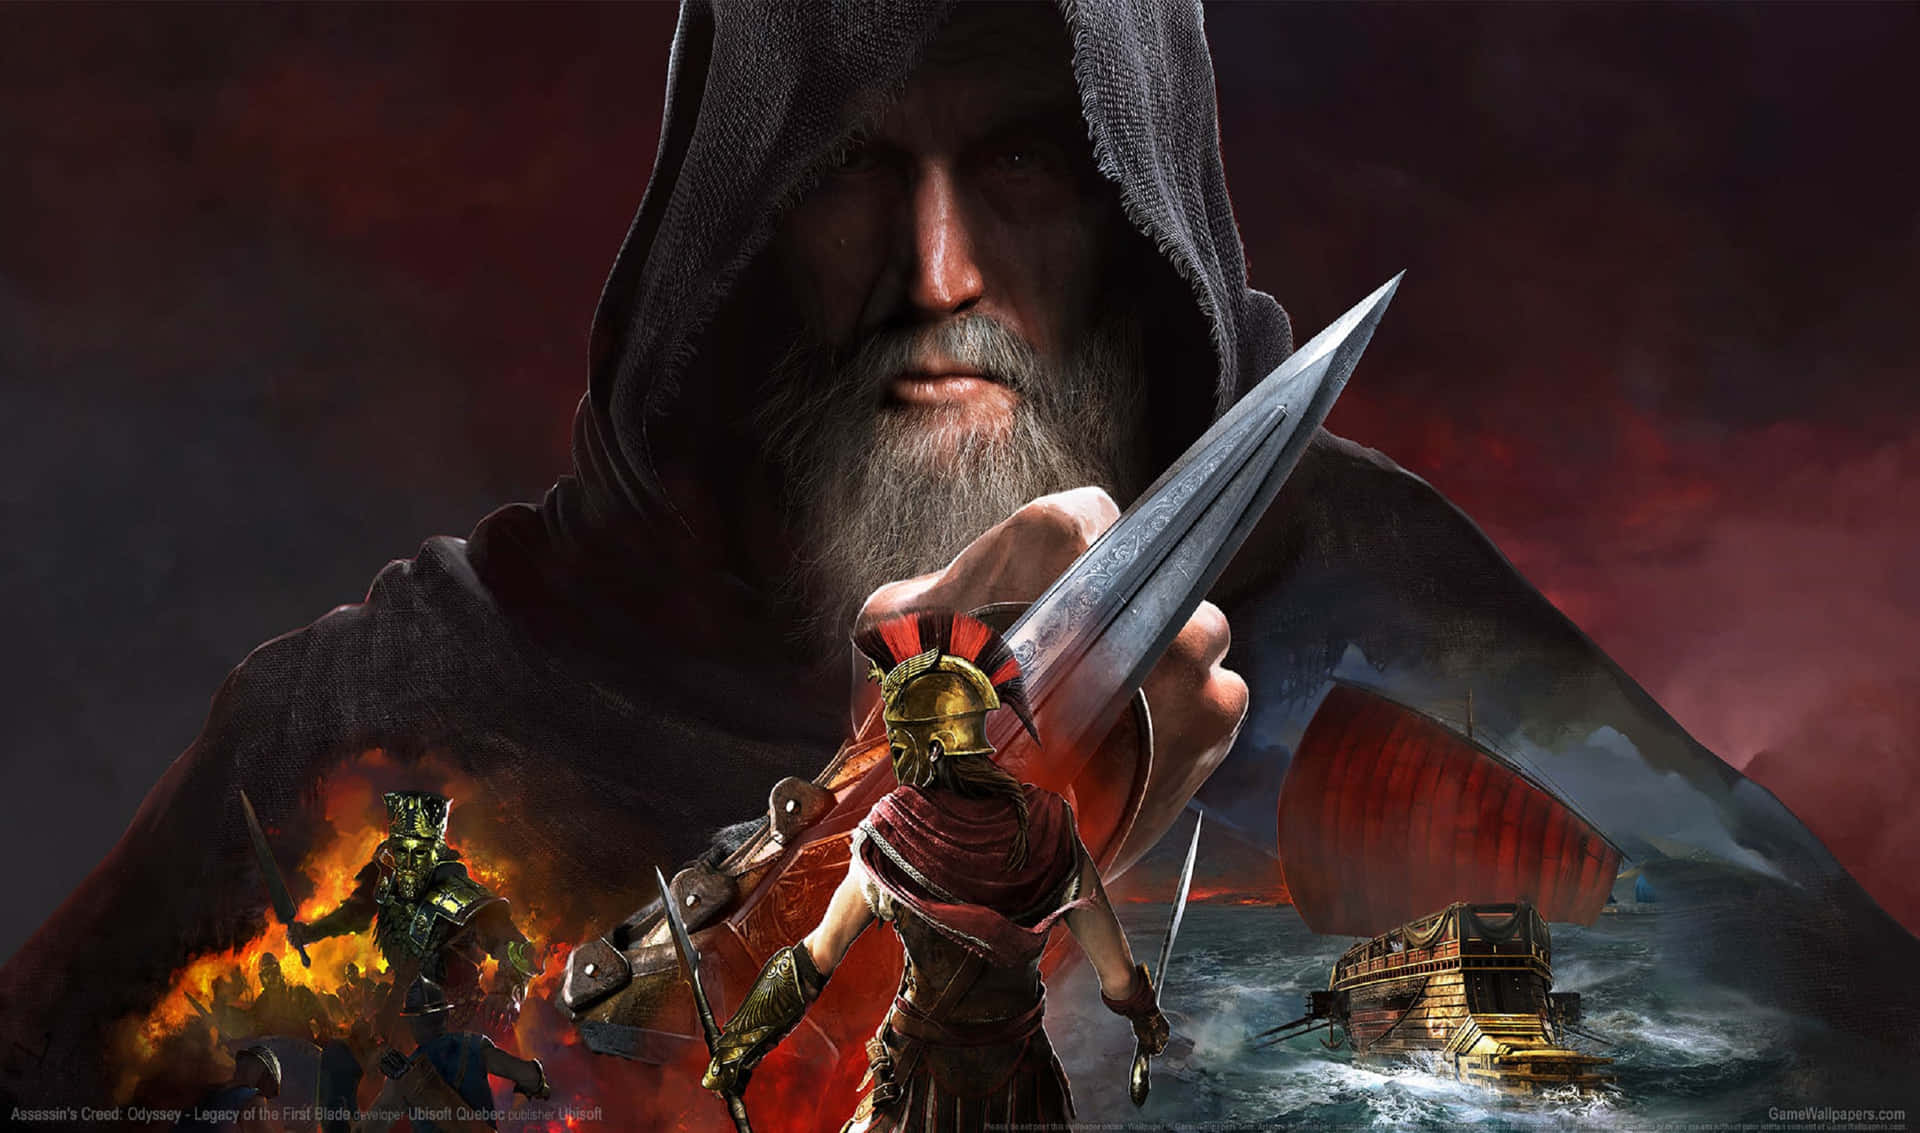 2440x1440bakgrundsbild För Assassin's Creed Odyssey Legacy Of The First Blade.